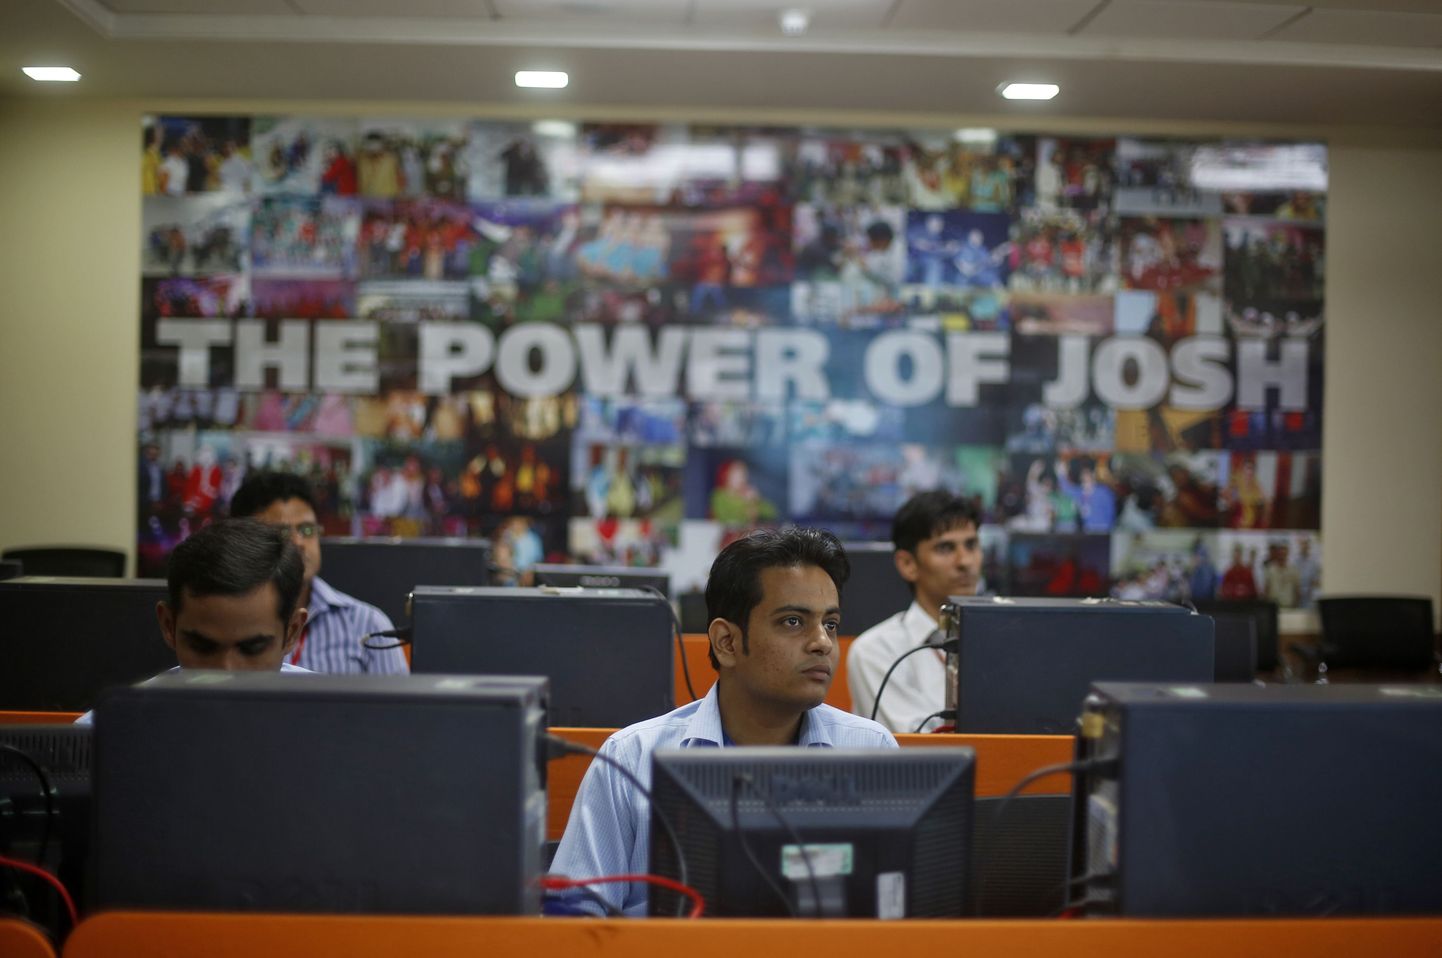 Värskelt värvatud tugiteenuse töötajad India firma Tech Mahindra kontoris Noida linnas.